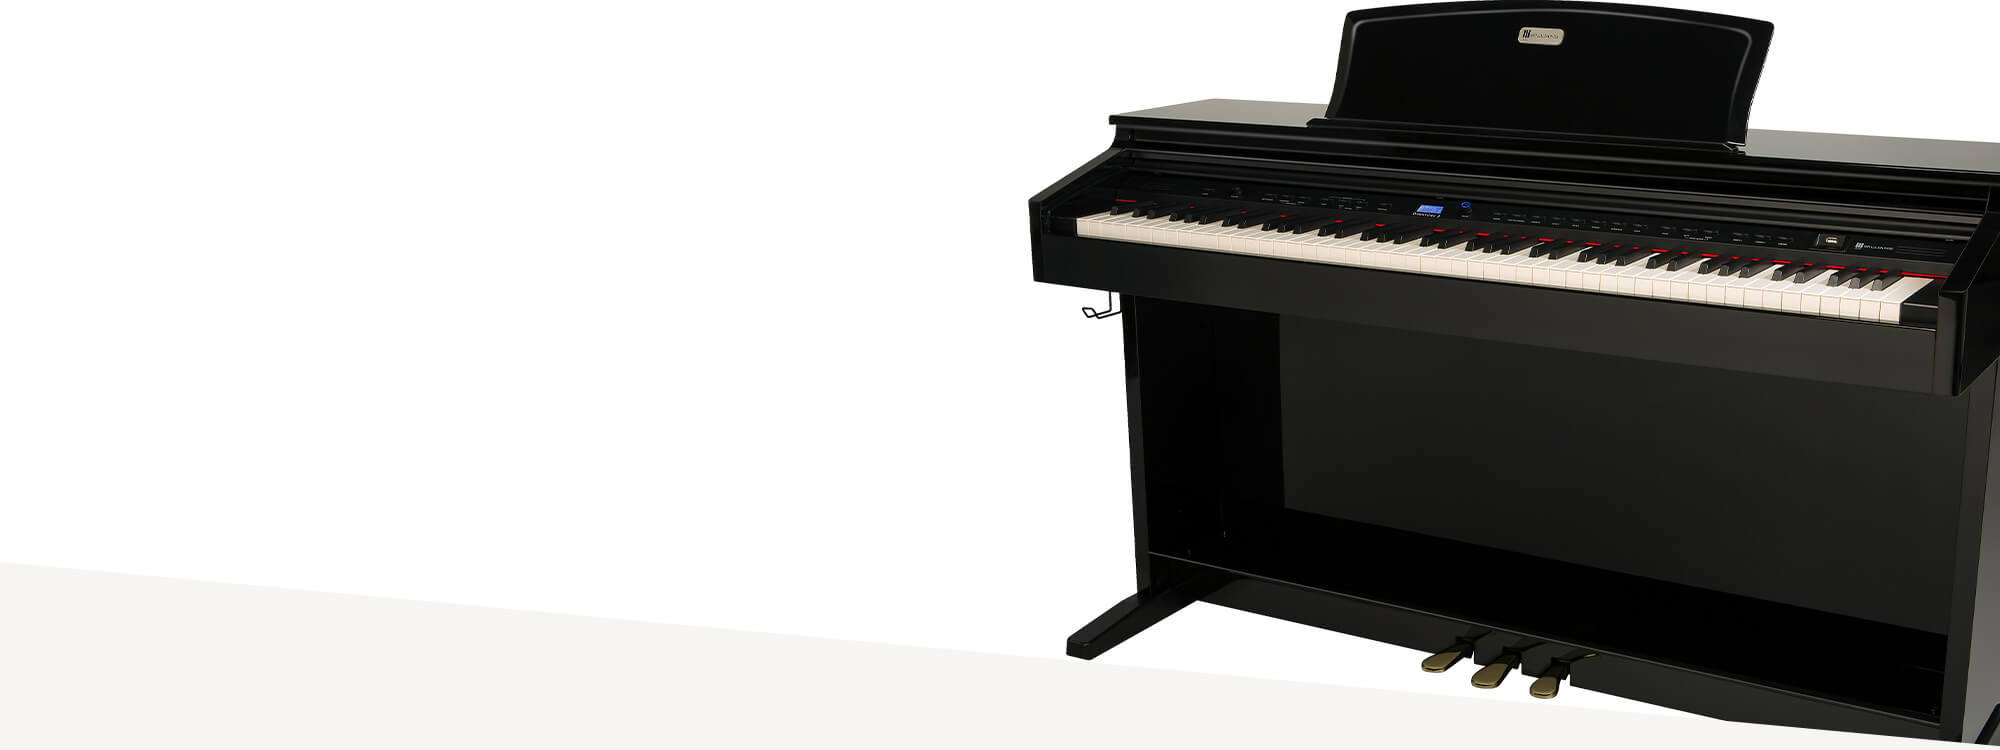 Williams Console Piano Overture 2 ebony.